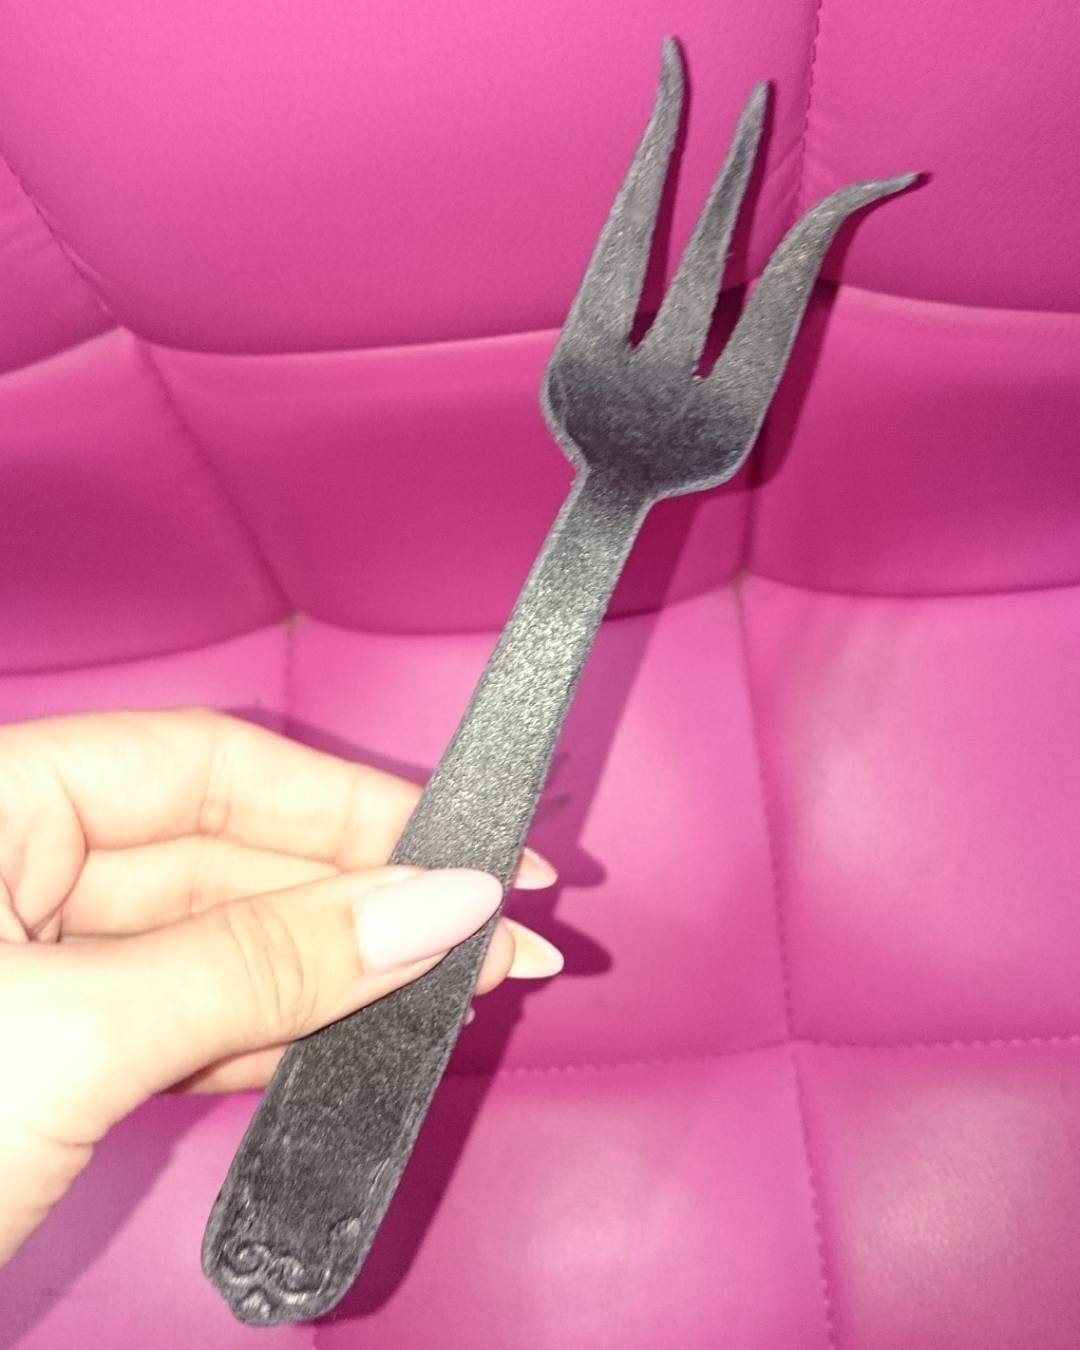 Jessica nigri fork